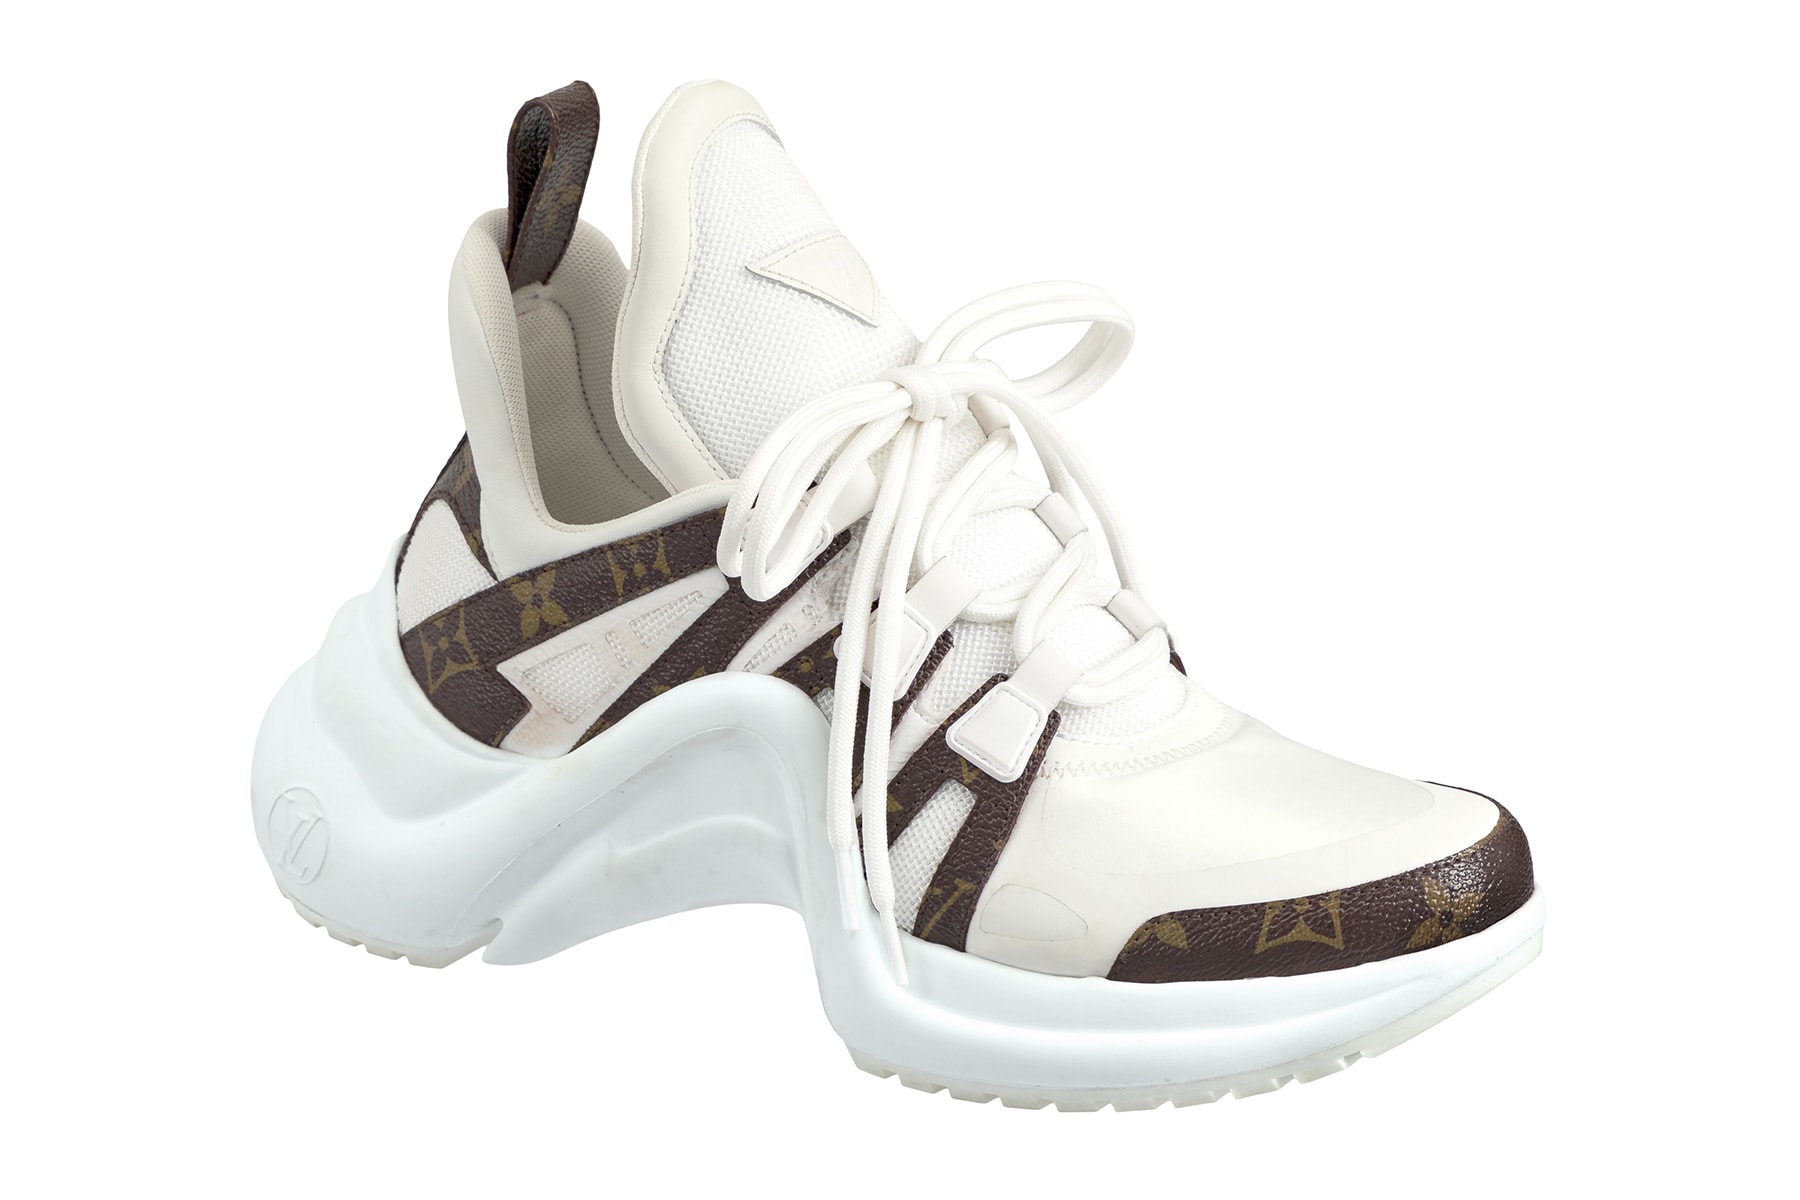 Louis Vuitton Archlight Sneaker Closer Look